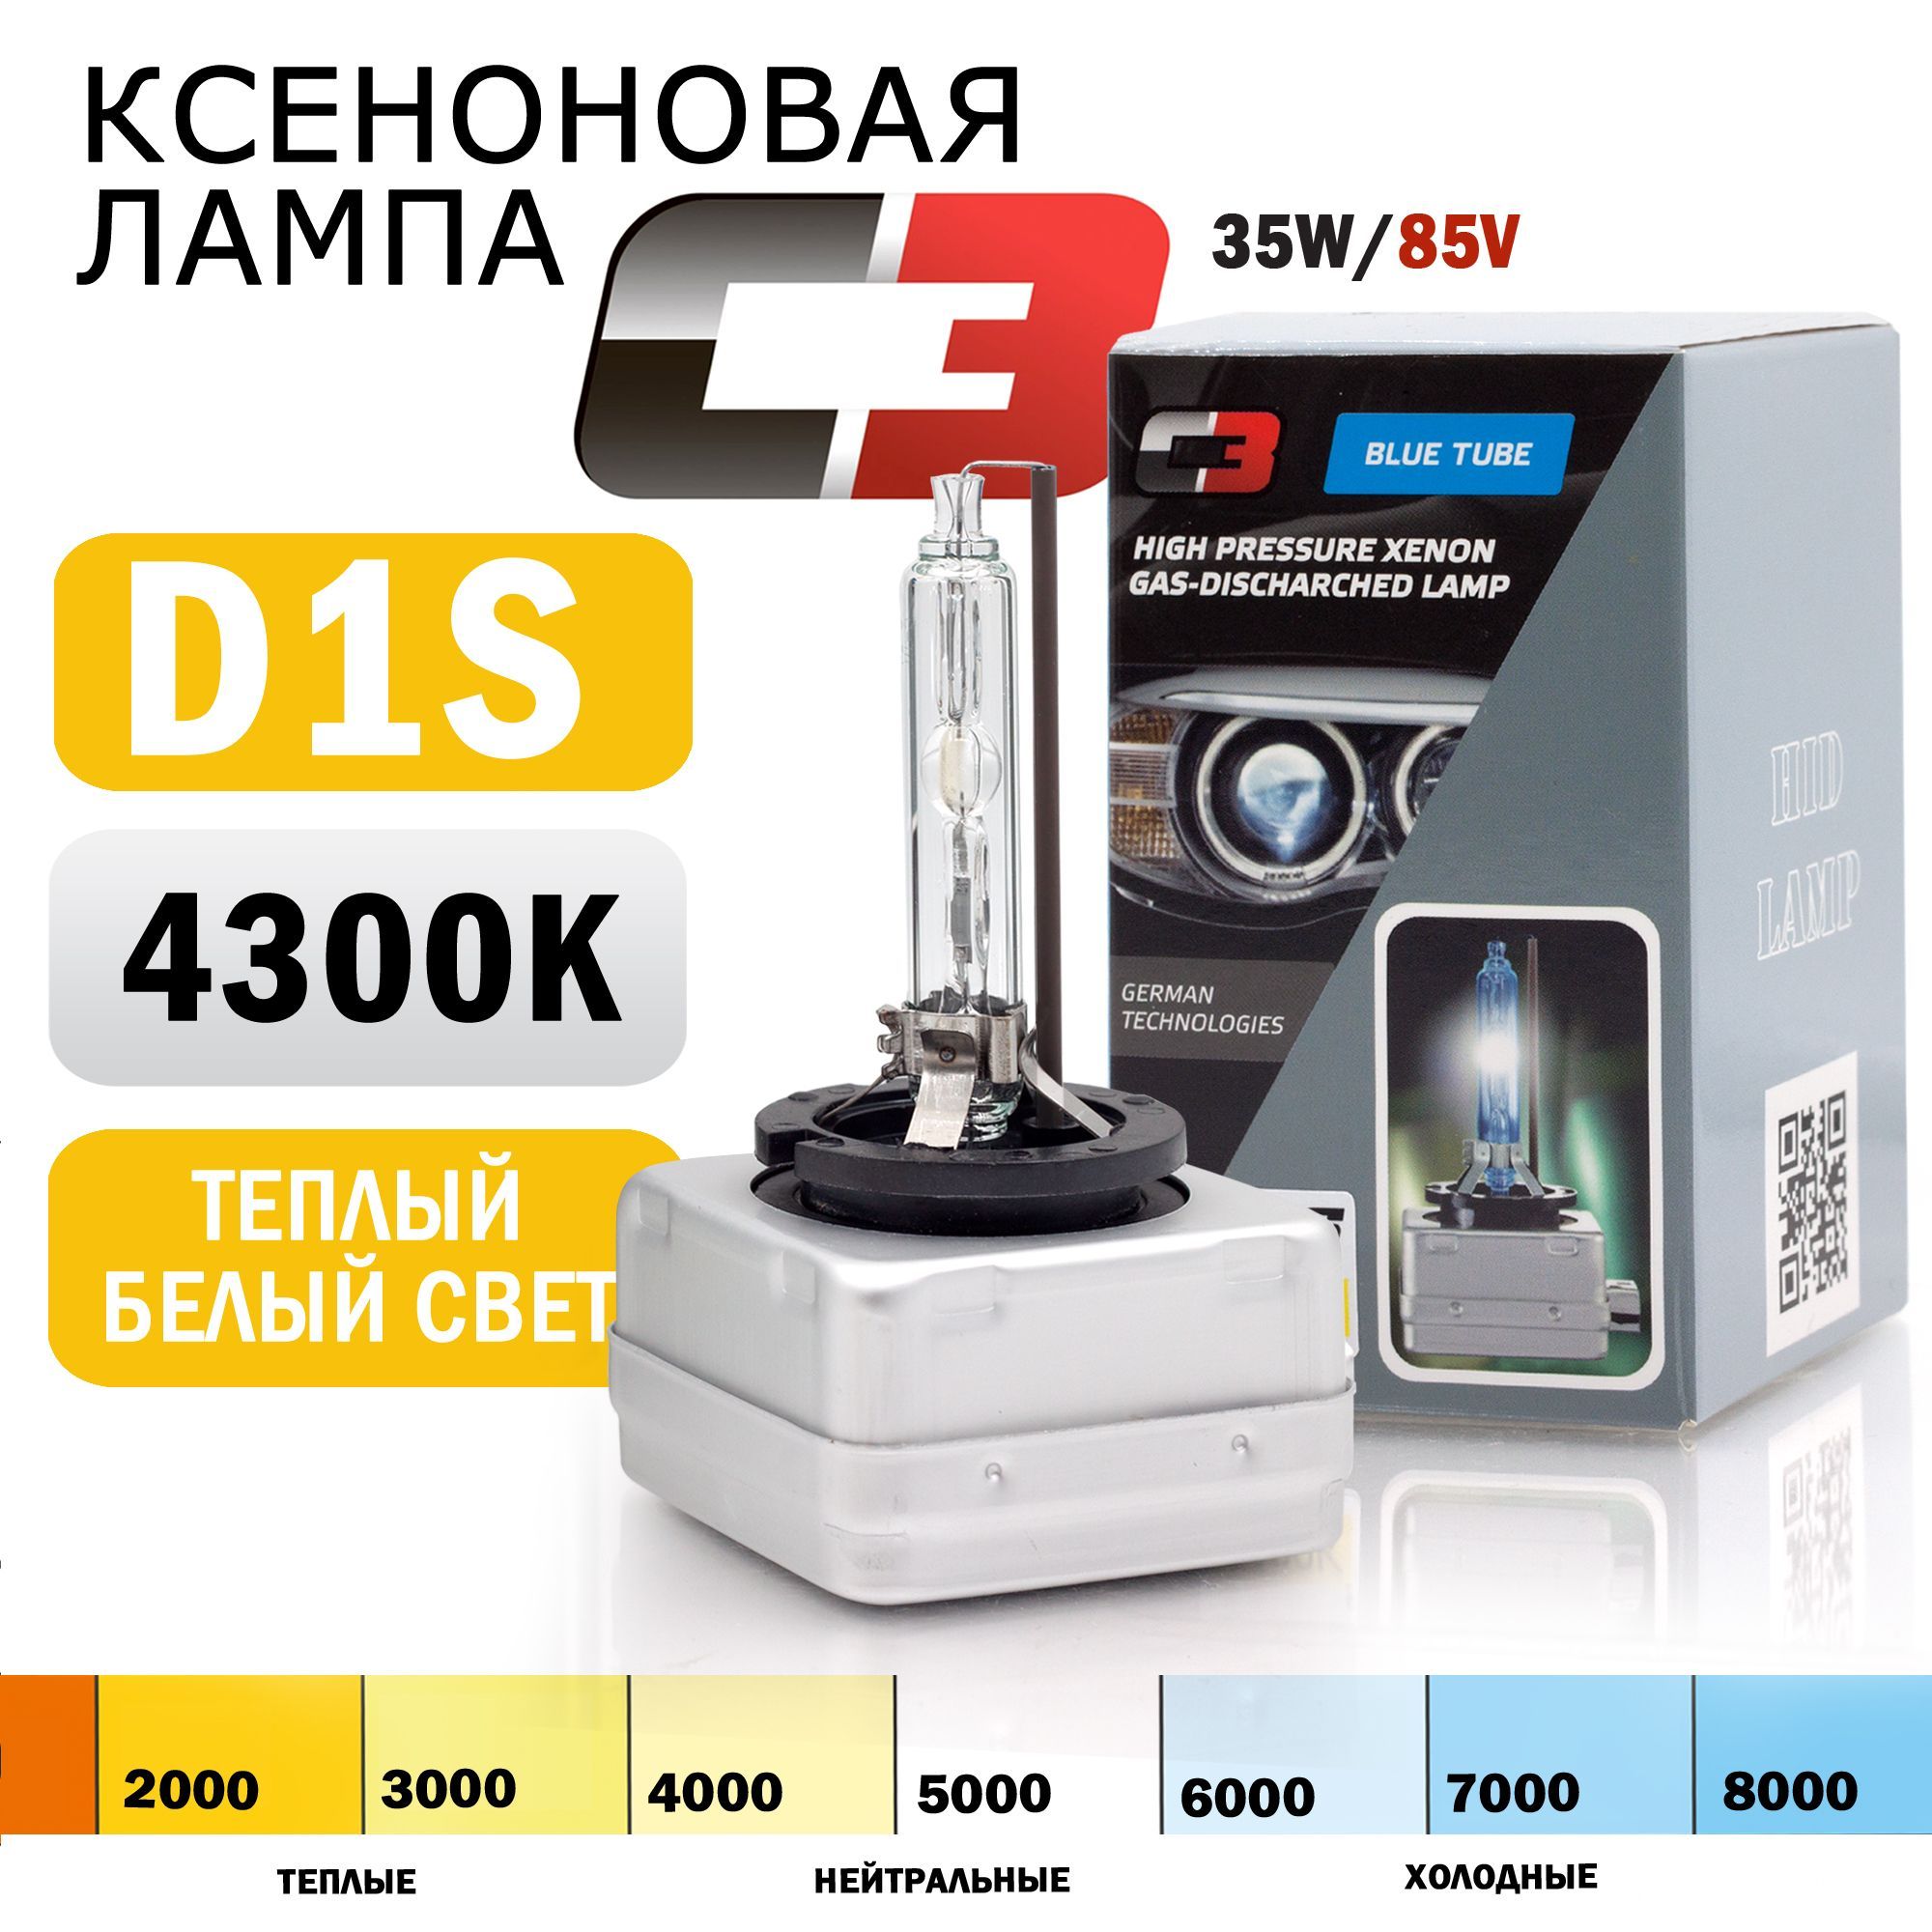 D1S 4300K Philips – купить в интернет-магазине OZON по низкой цене